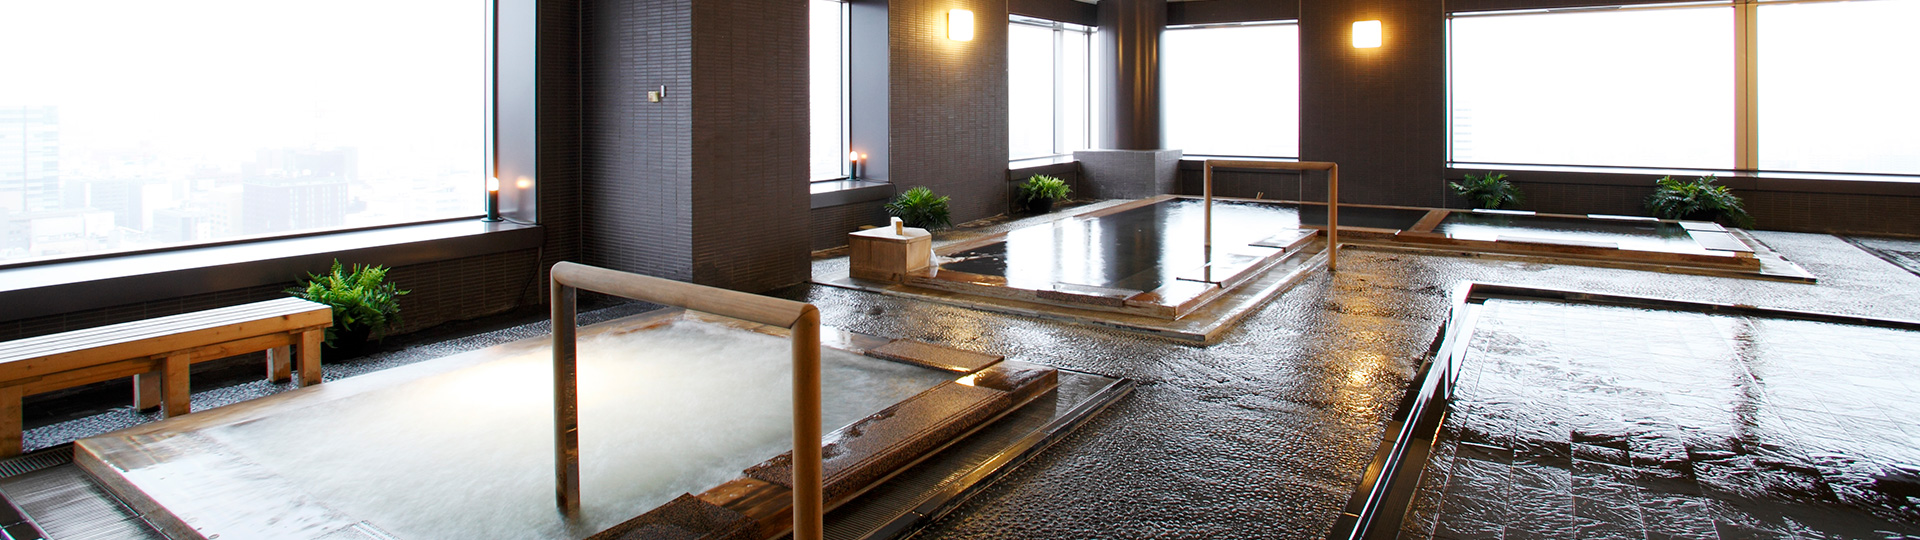 手ぶらでリラックスできる 札幌駅周辺のシャワールームやお風呂施設 Pathee パシー